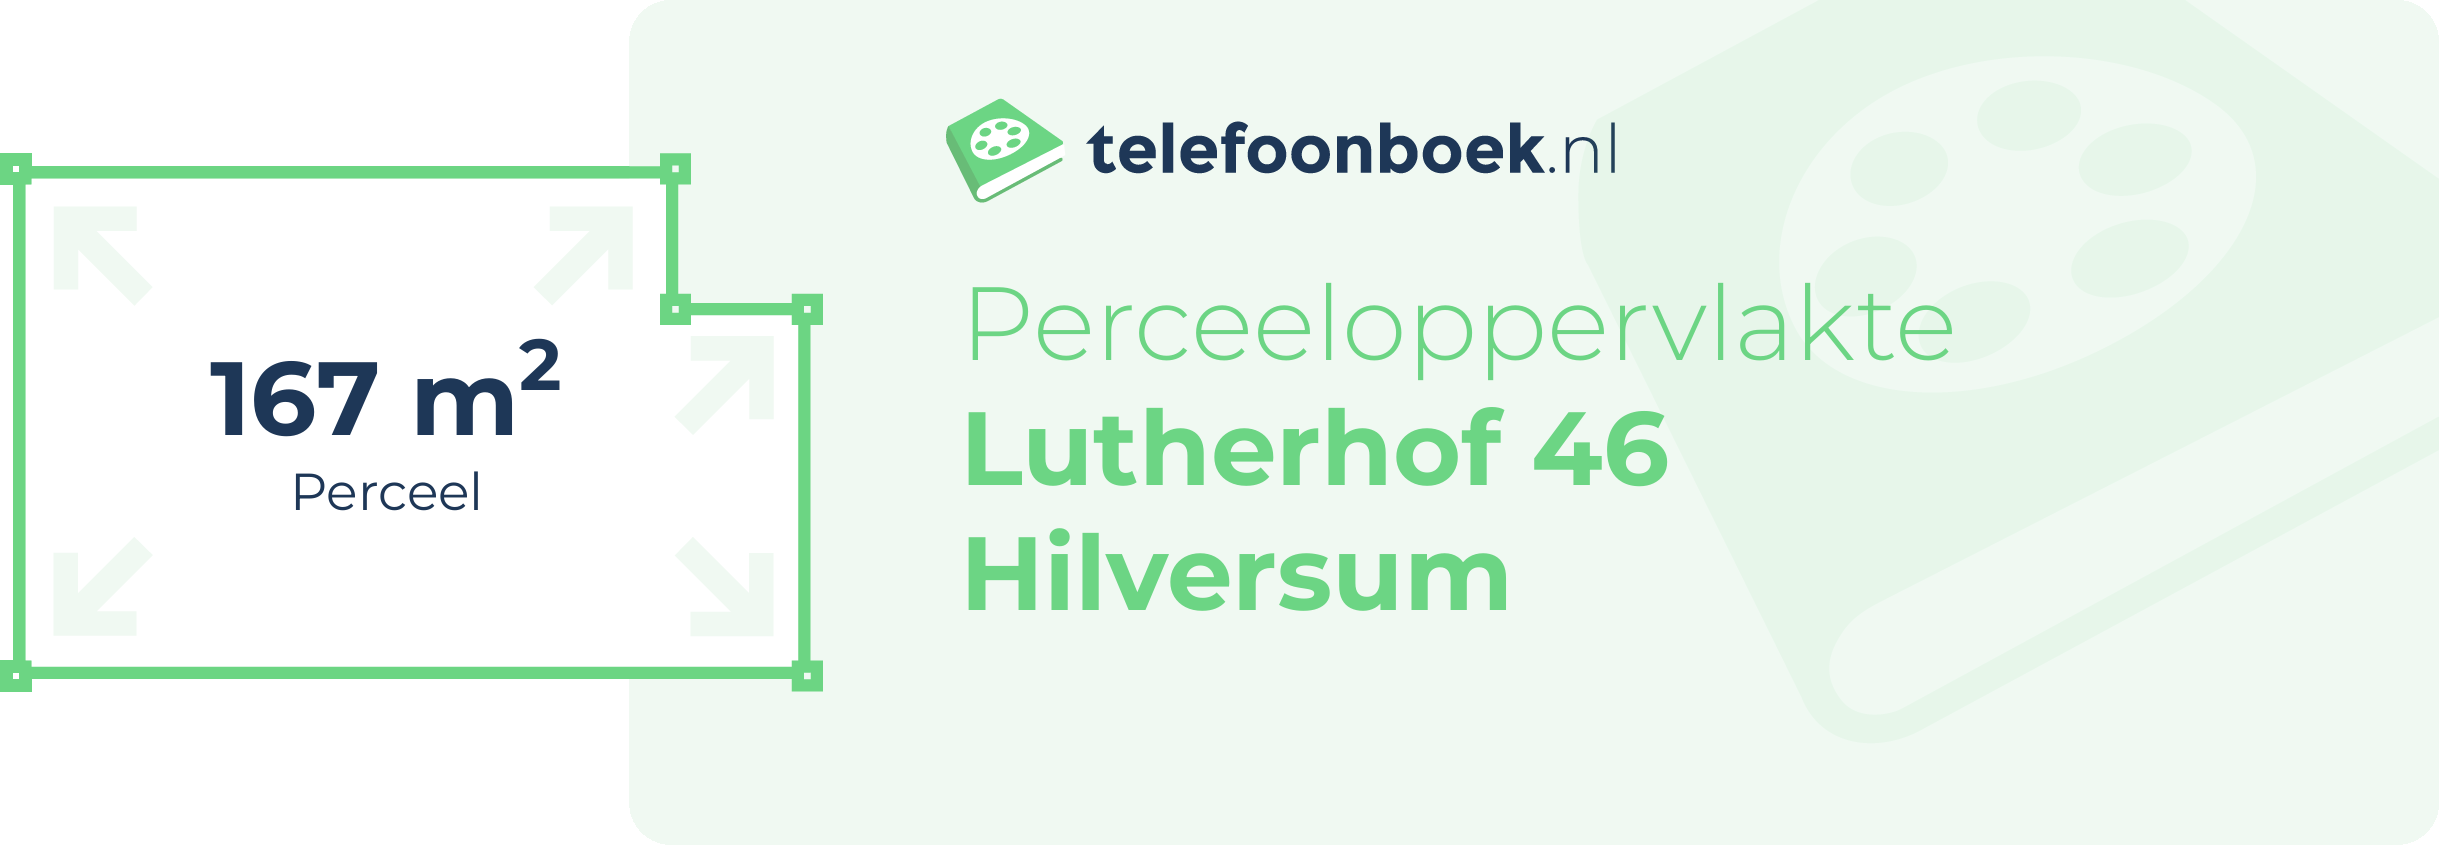 Perceeloppervlakte Lutherhof 46 Hilversum